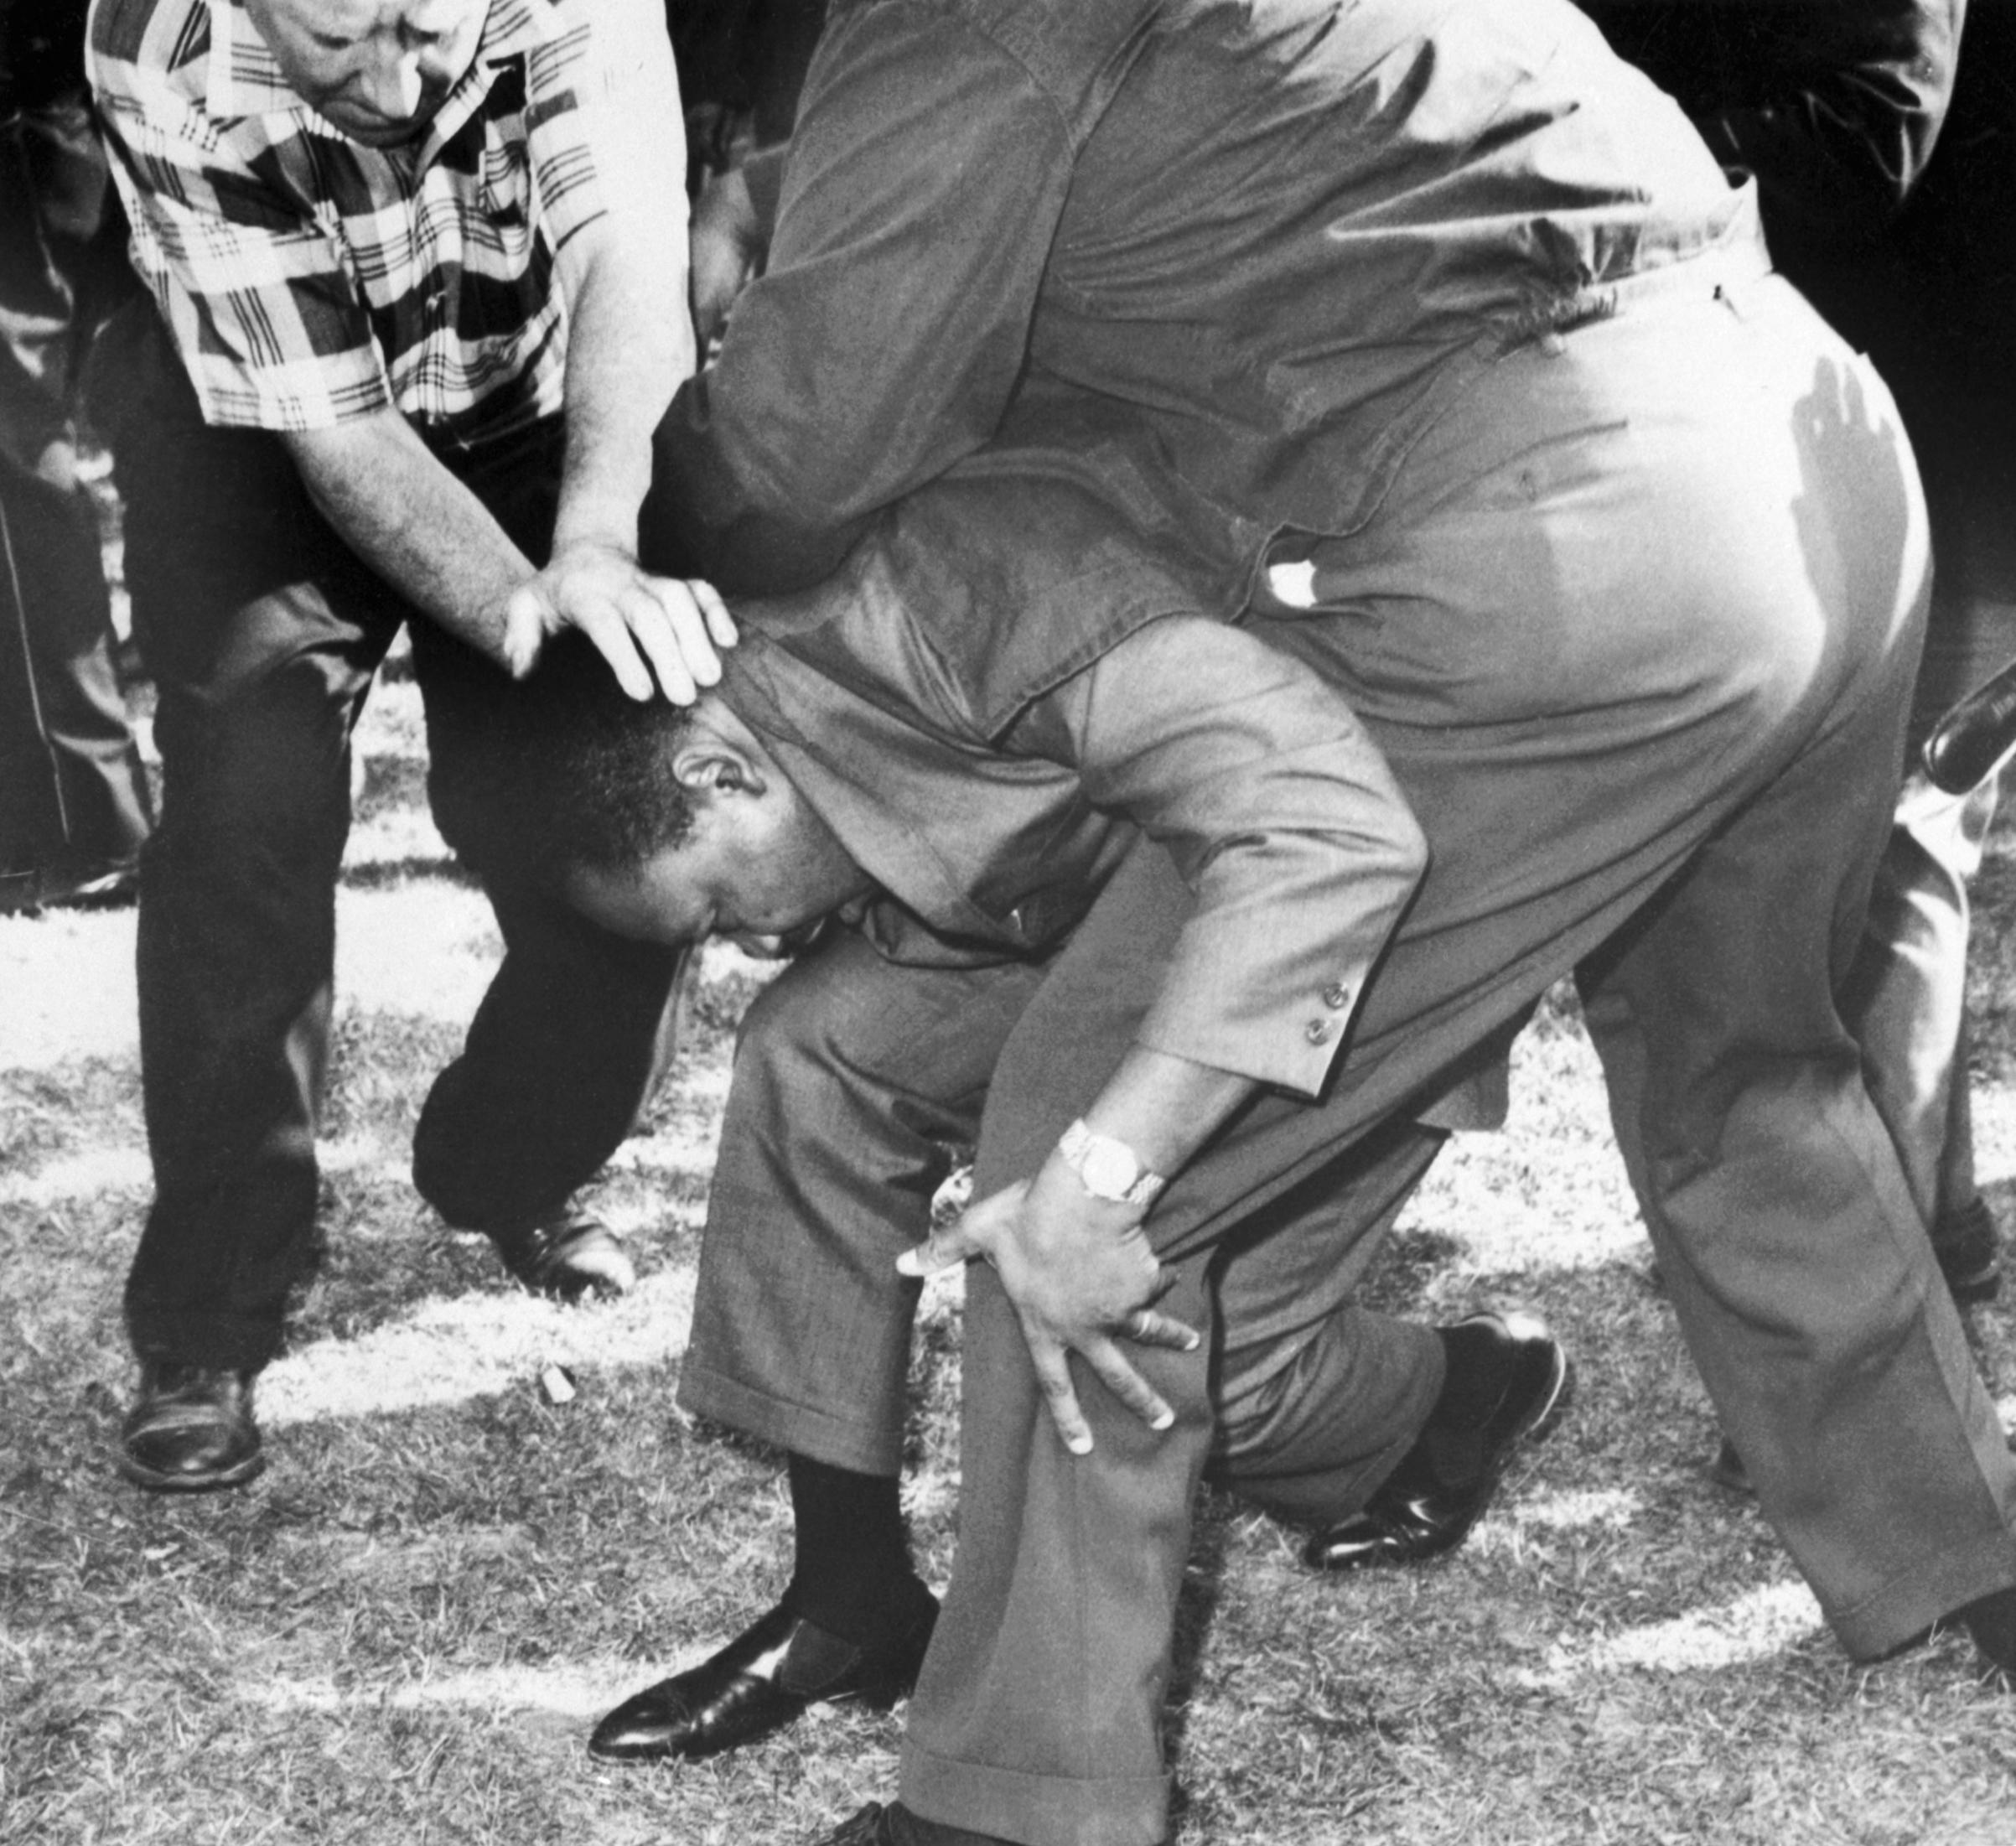 Martin Luther King Jr protegido por assessores no meio de uma multidão hostil. Durante a marcha ele foi atingido por uma pedra na cabeça